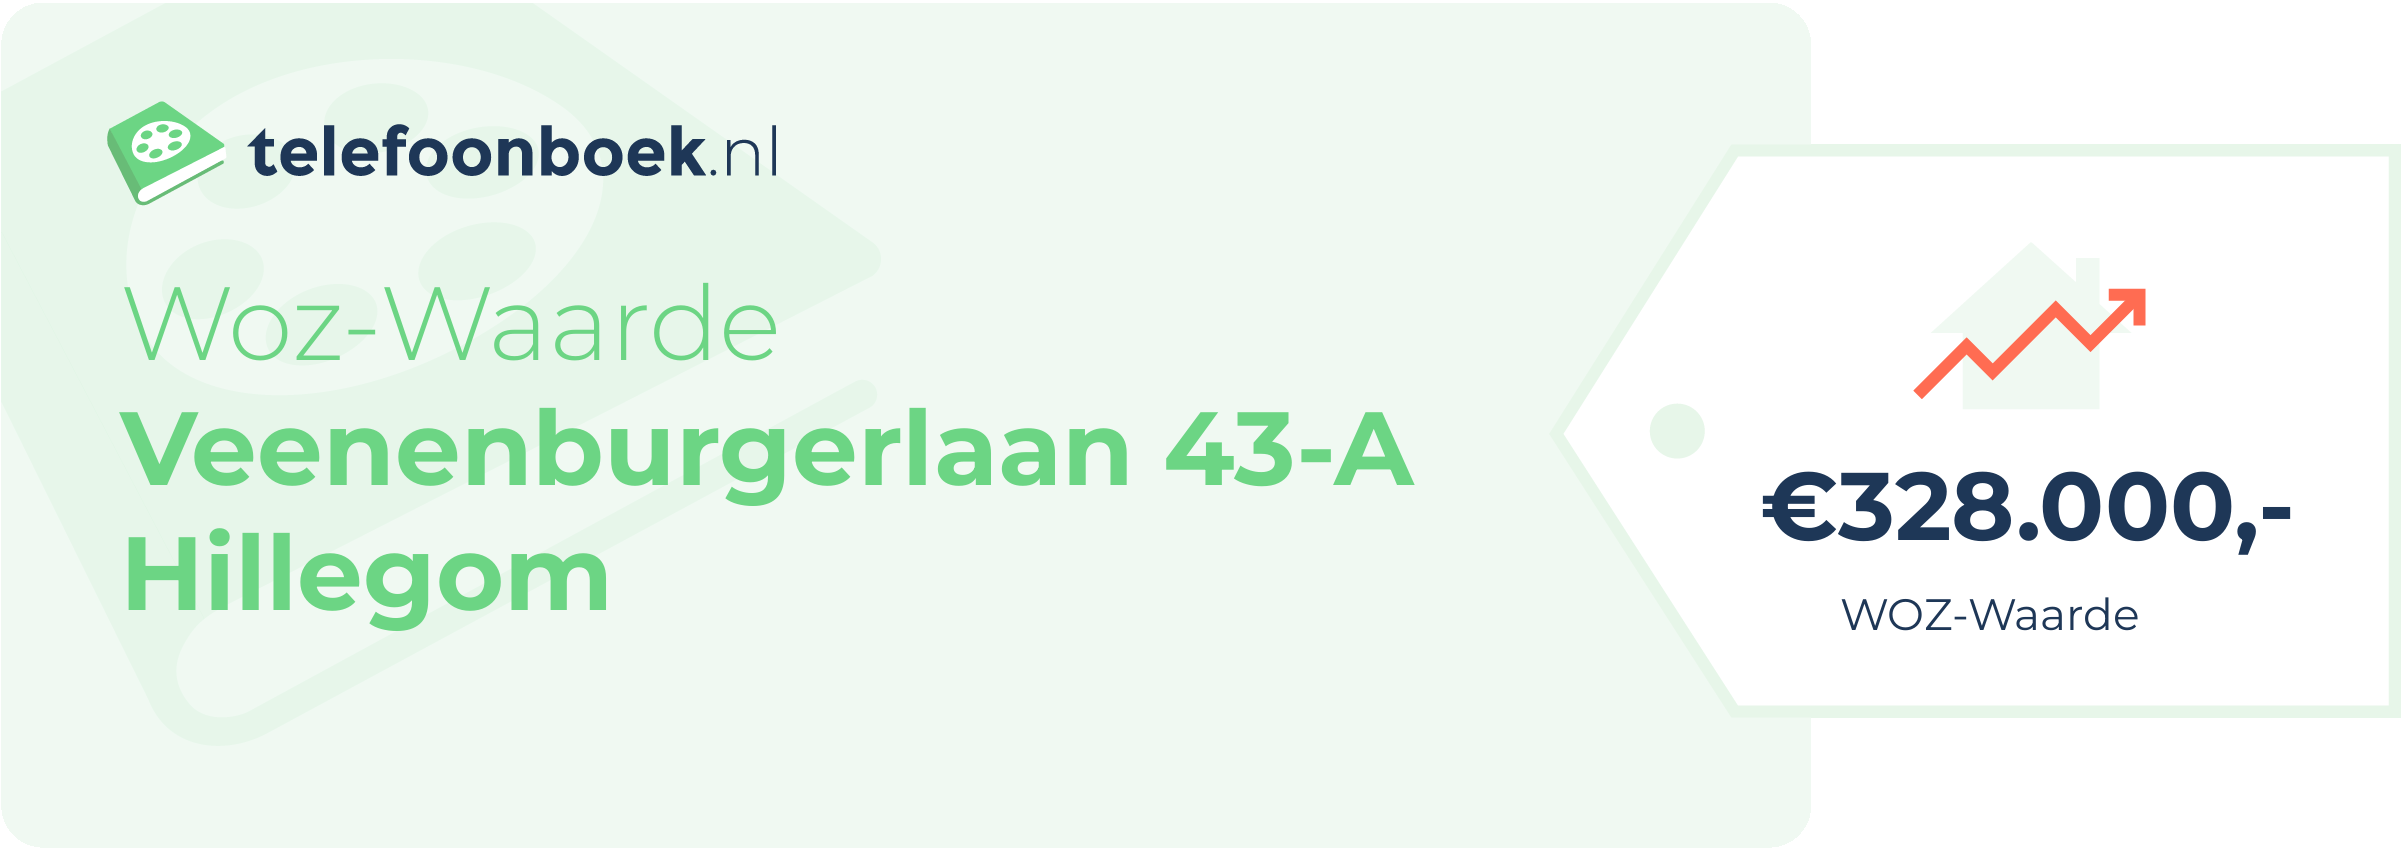 WOZ-waarde Veenenburgerlaan 43-A Hillegom